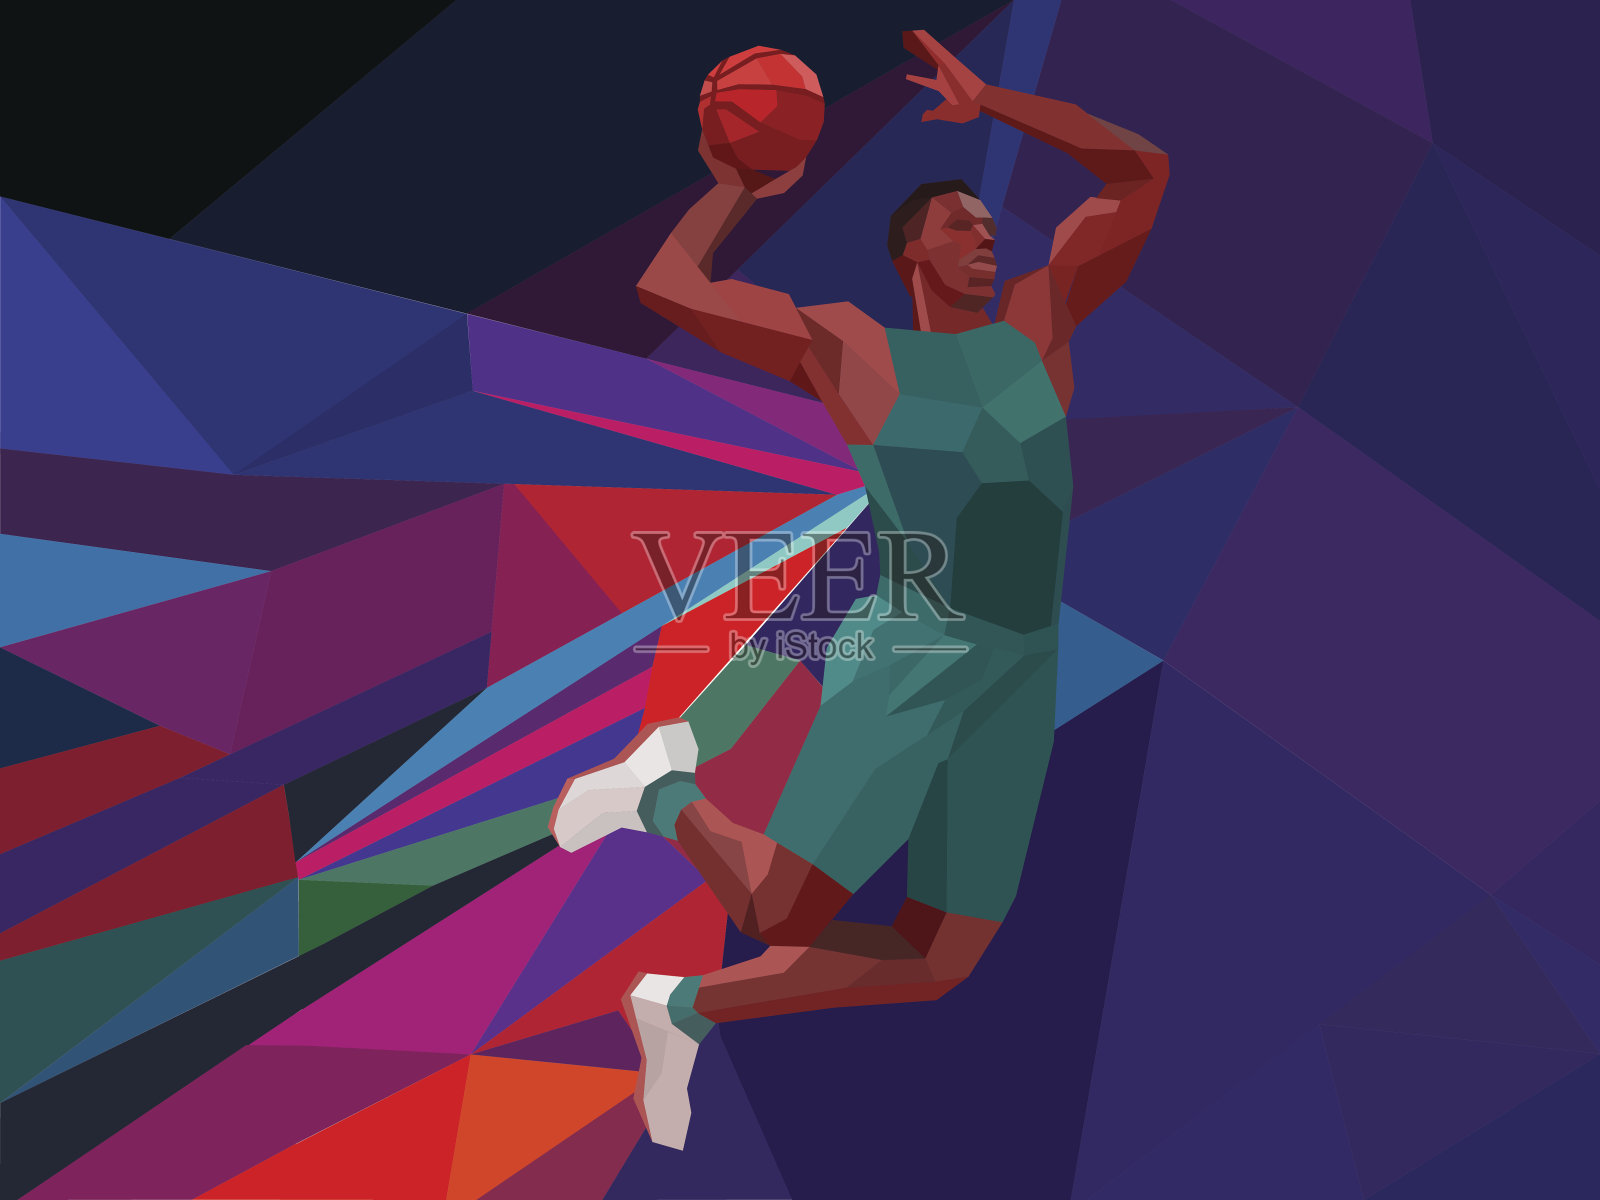 多边形几何风格篮球运动员彩色低多边形背景设计模板素材